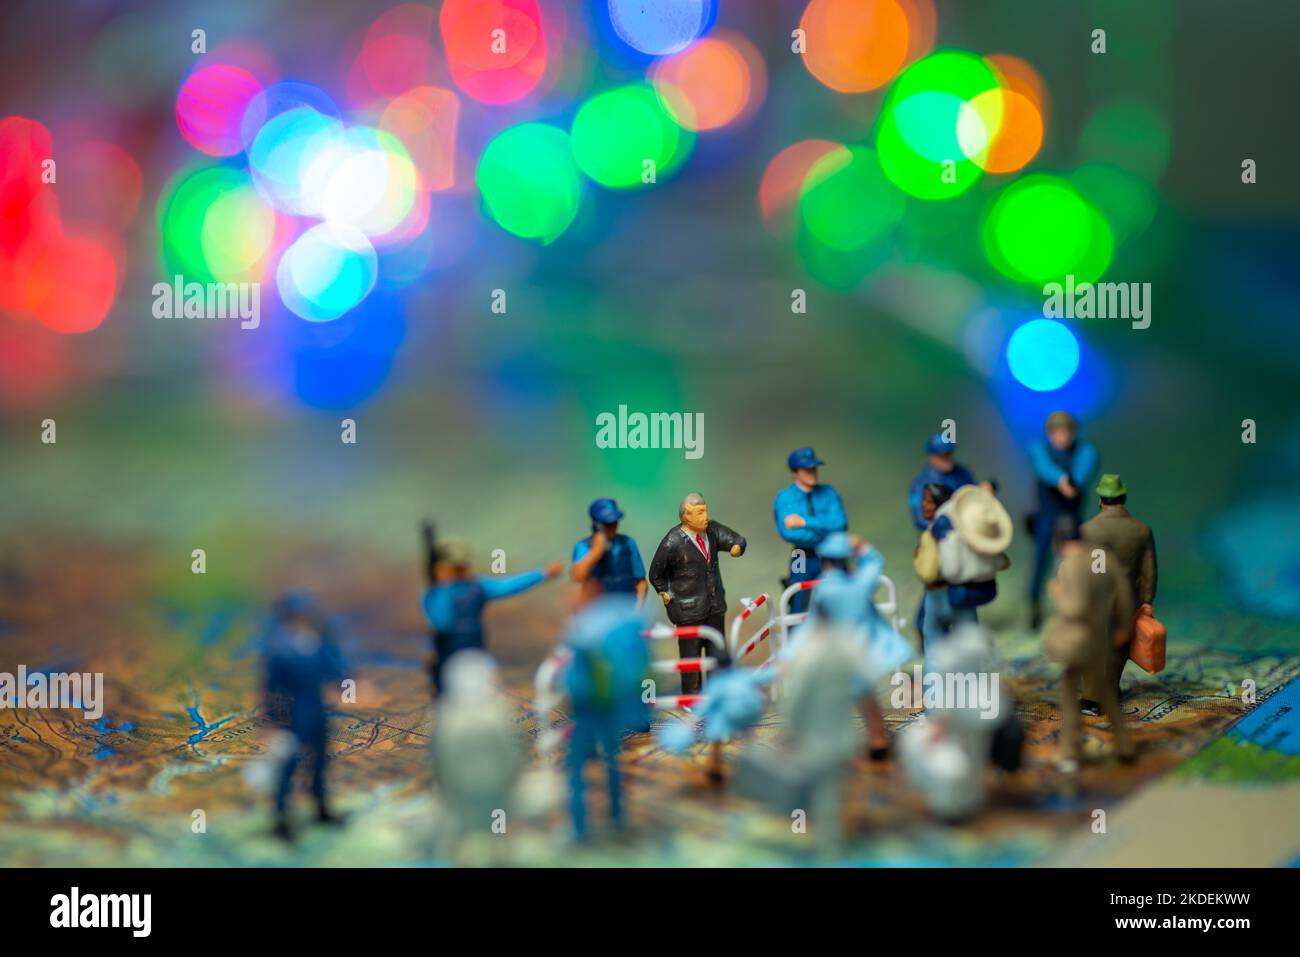 Miniatur Spielzeug Menschen Konzept US-Grenze Patrouillen gegen eine Gruppe von Migranten aus Mexiko-verwischen Bokeh Licht im Hintergrund. Stockfoto